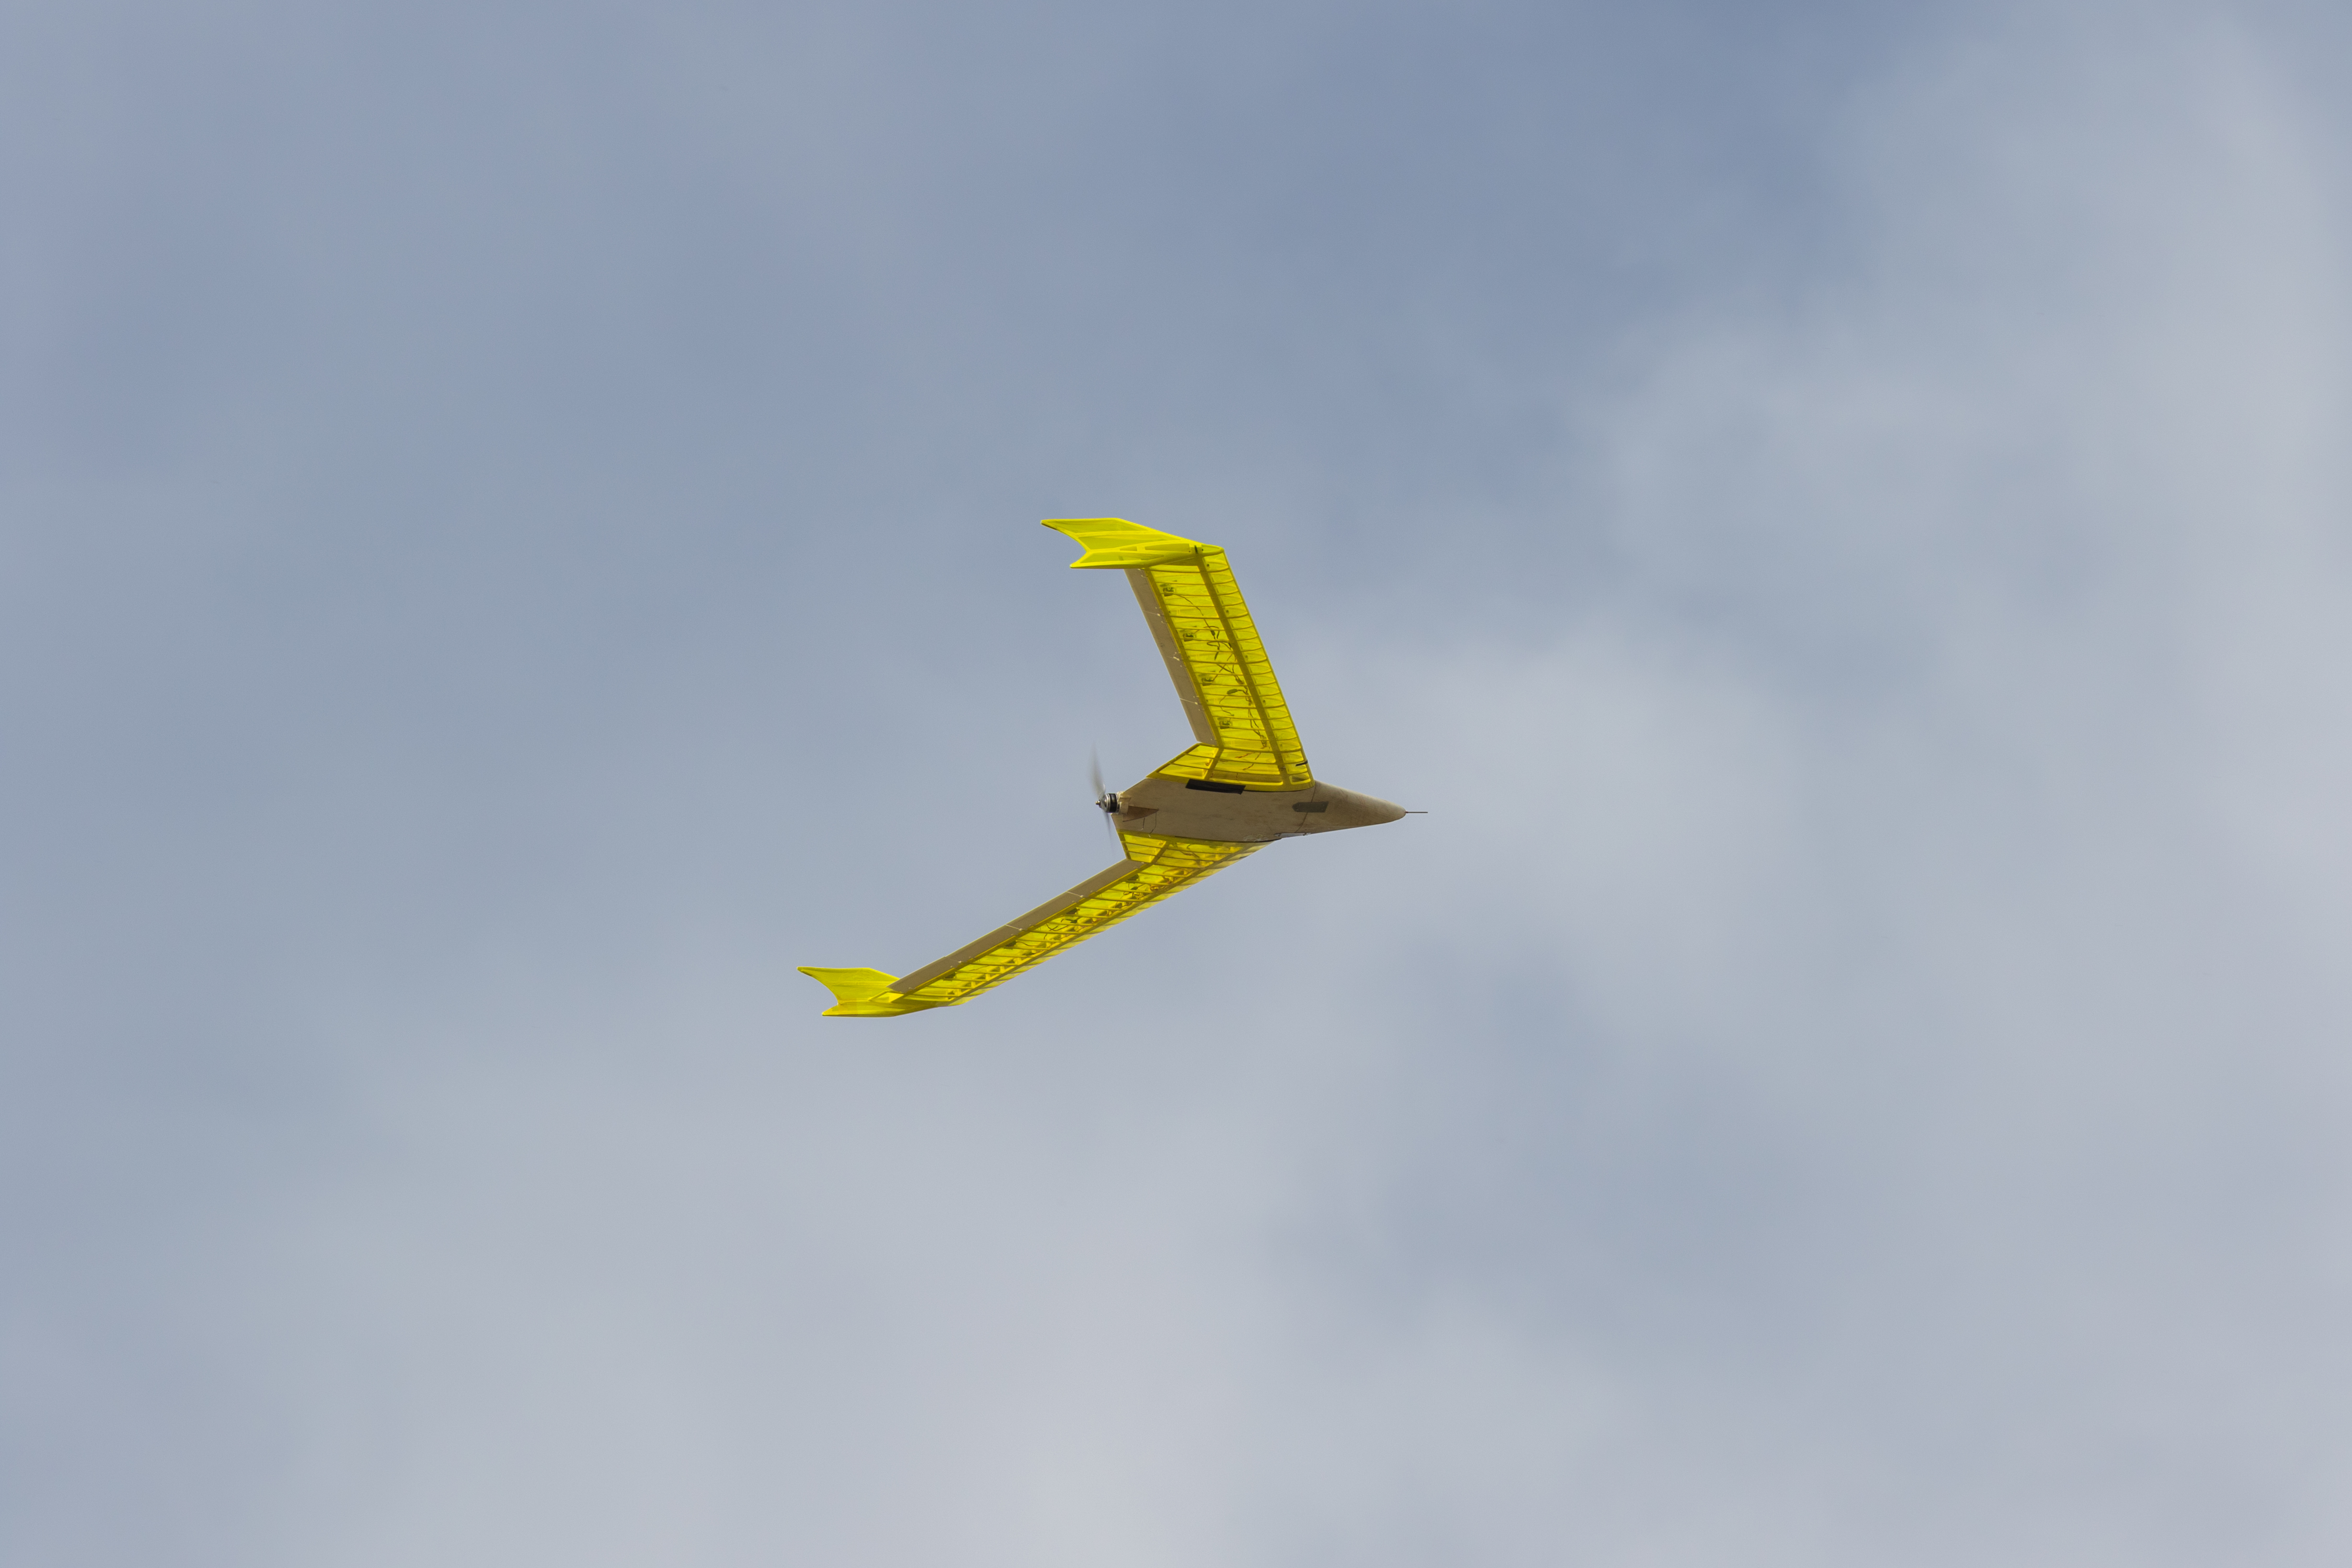 3D printed aircraft